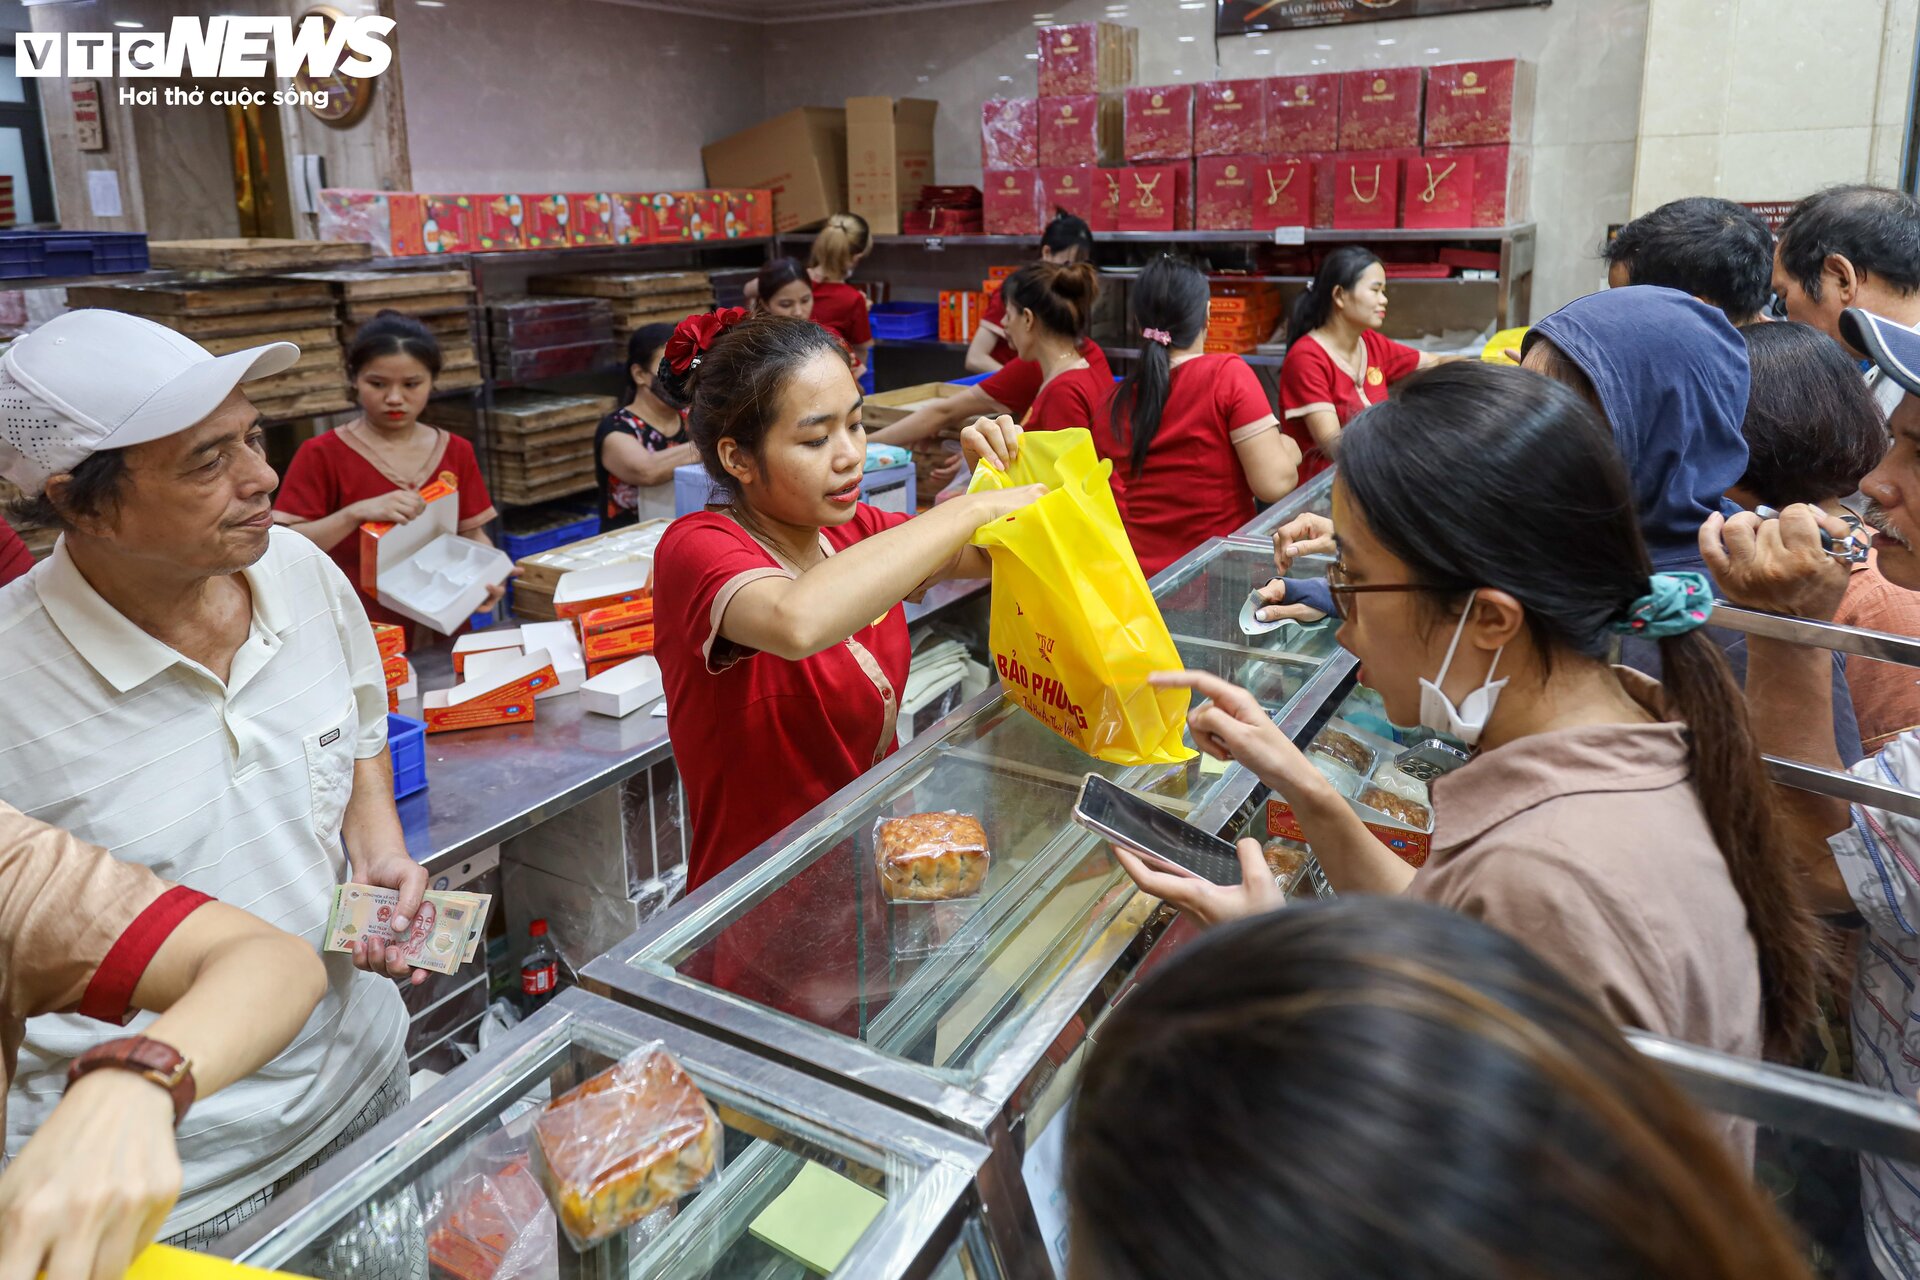 Hàng trăm người xếp hàng chờ mua bánh trung thu ở Hà Nội - 16